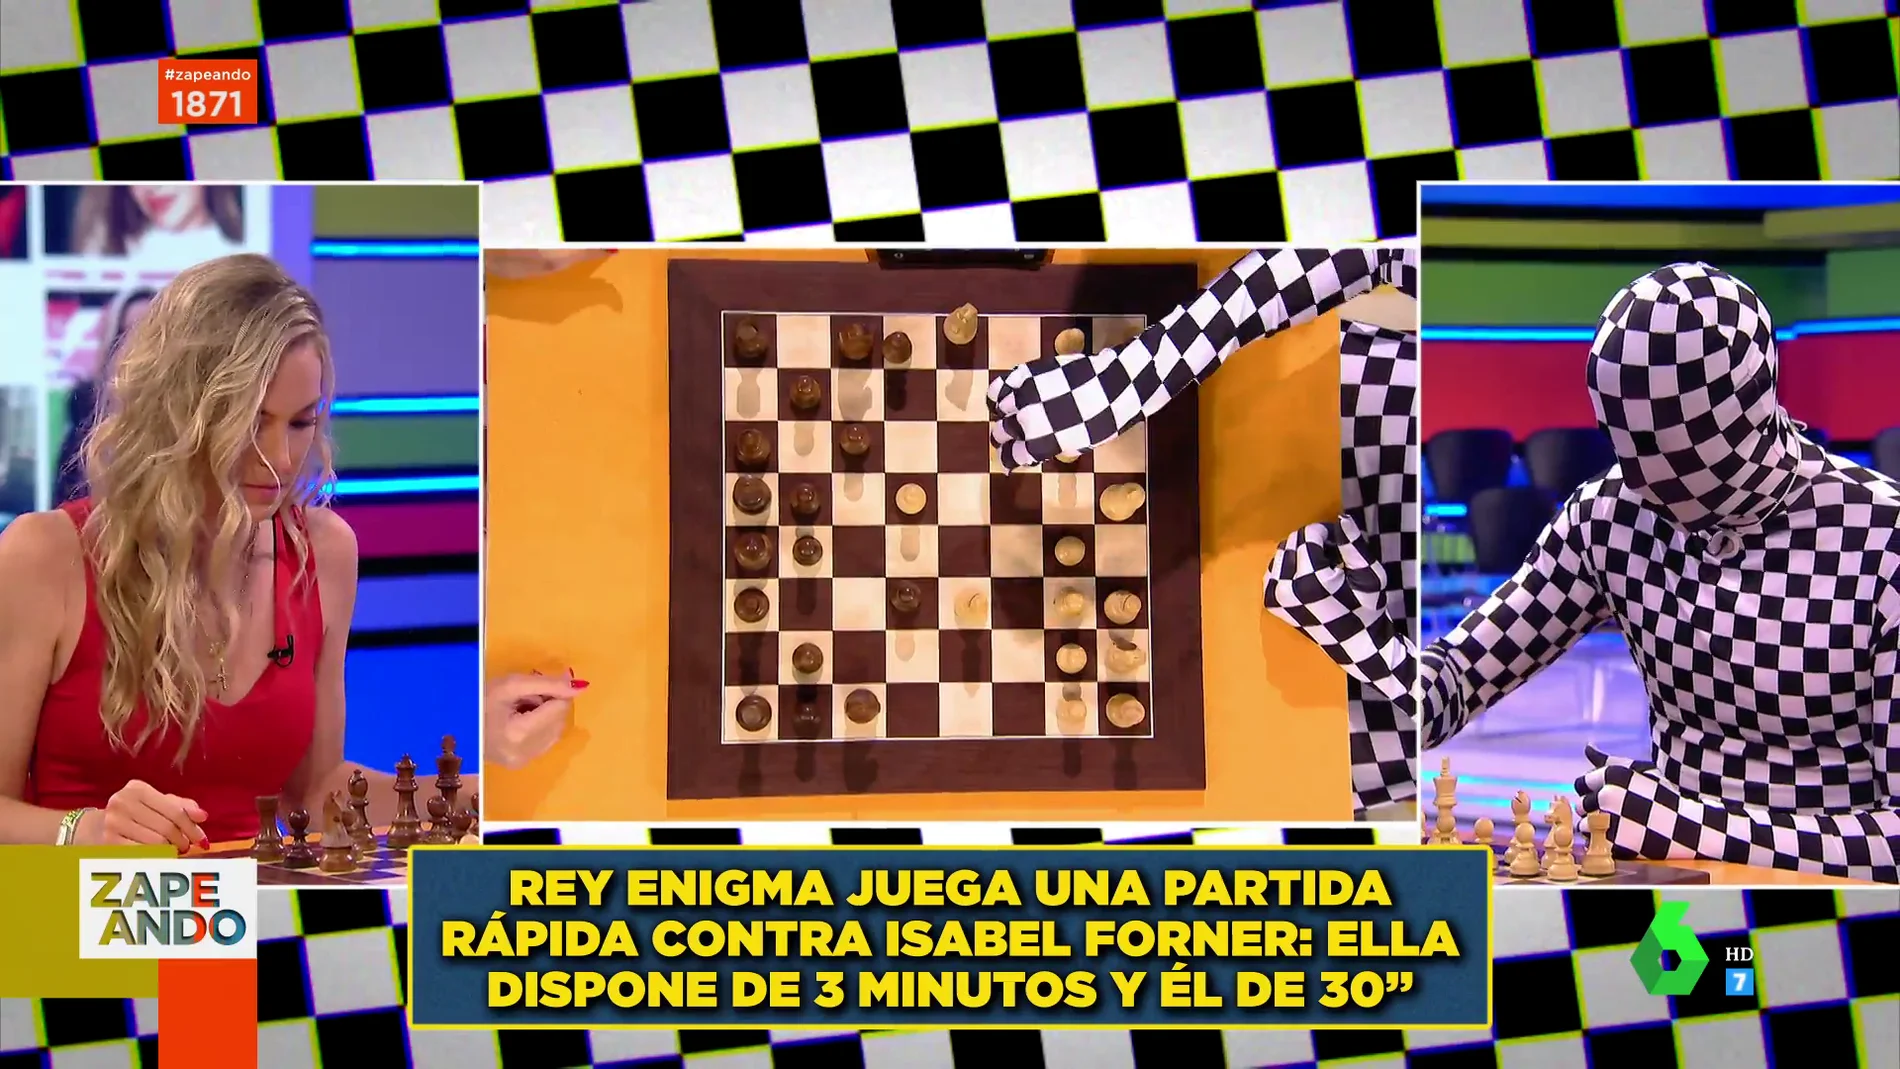 ¿Quién es 'rey enigma'? Este es el ajedrecista anónimo que te ofrece 100 euros por ganarle una partida